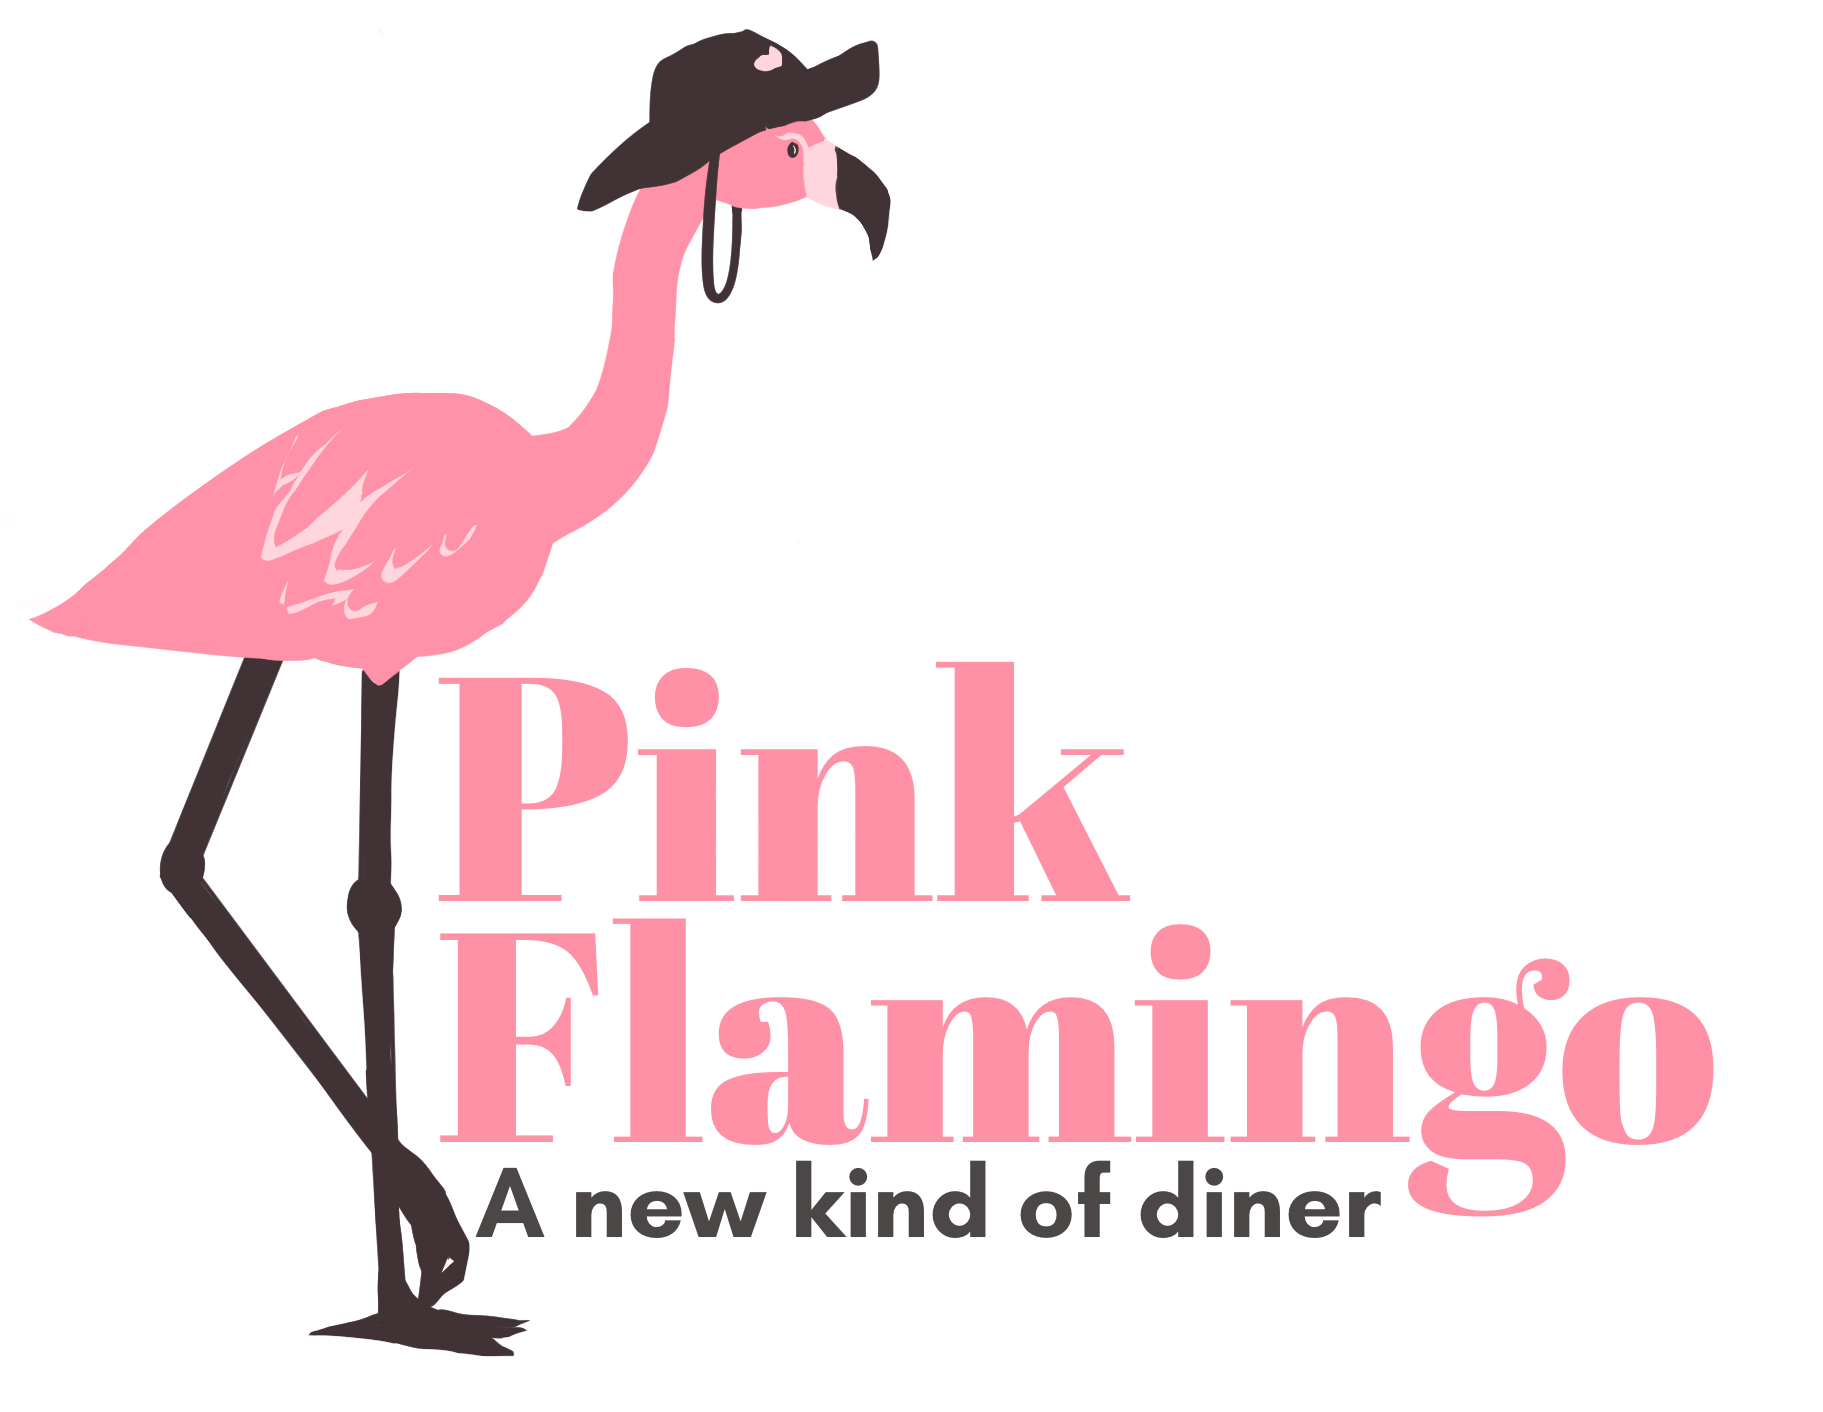 Live Music - The Crazy Flamingo